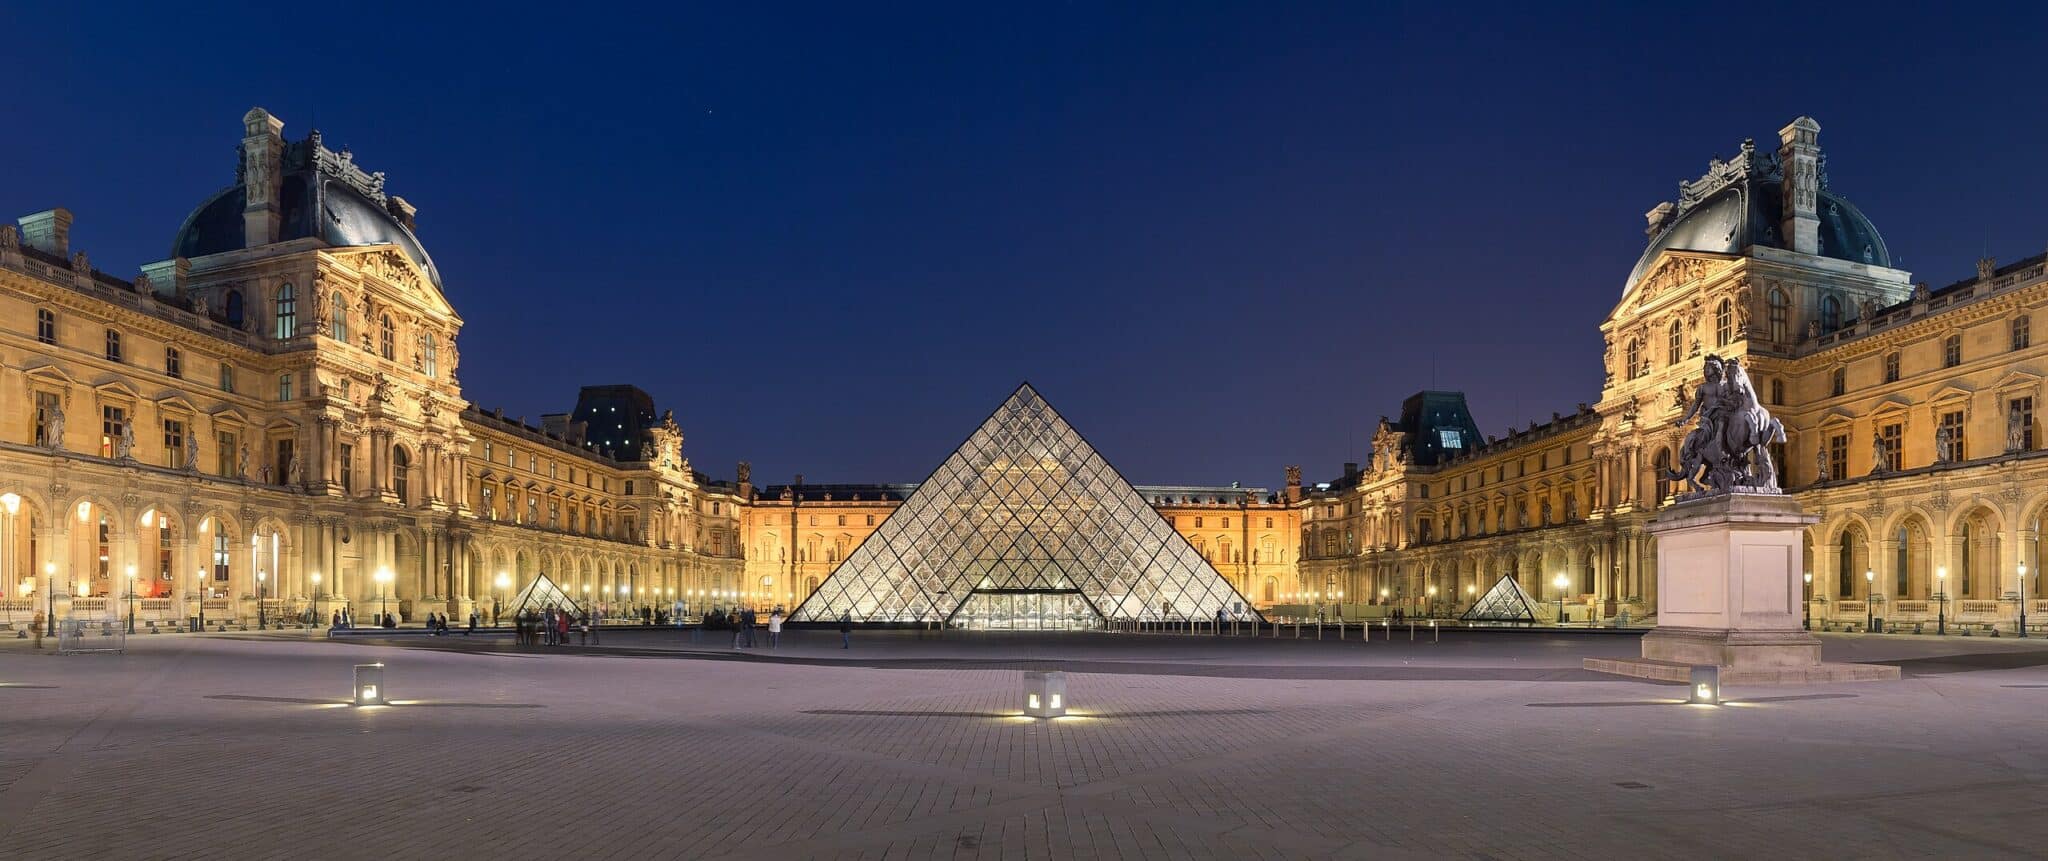 Musée du Louvre de nuit, Paris